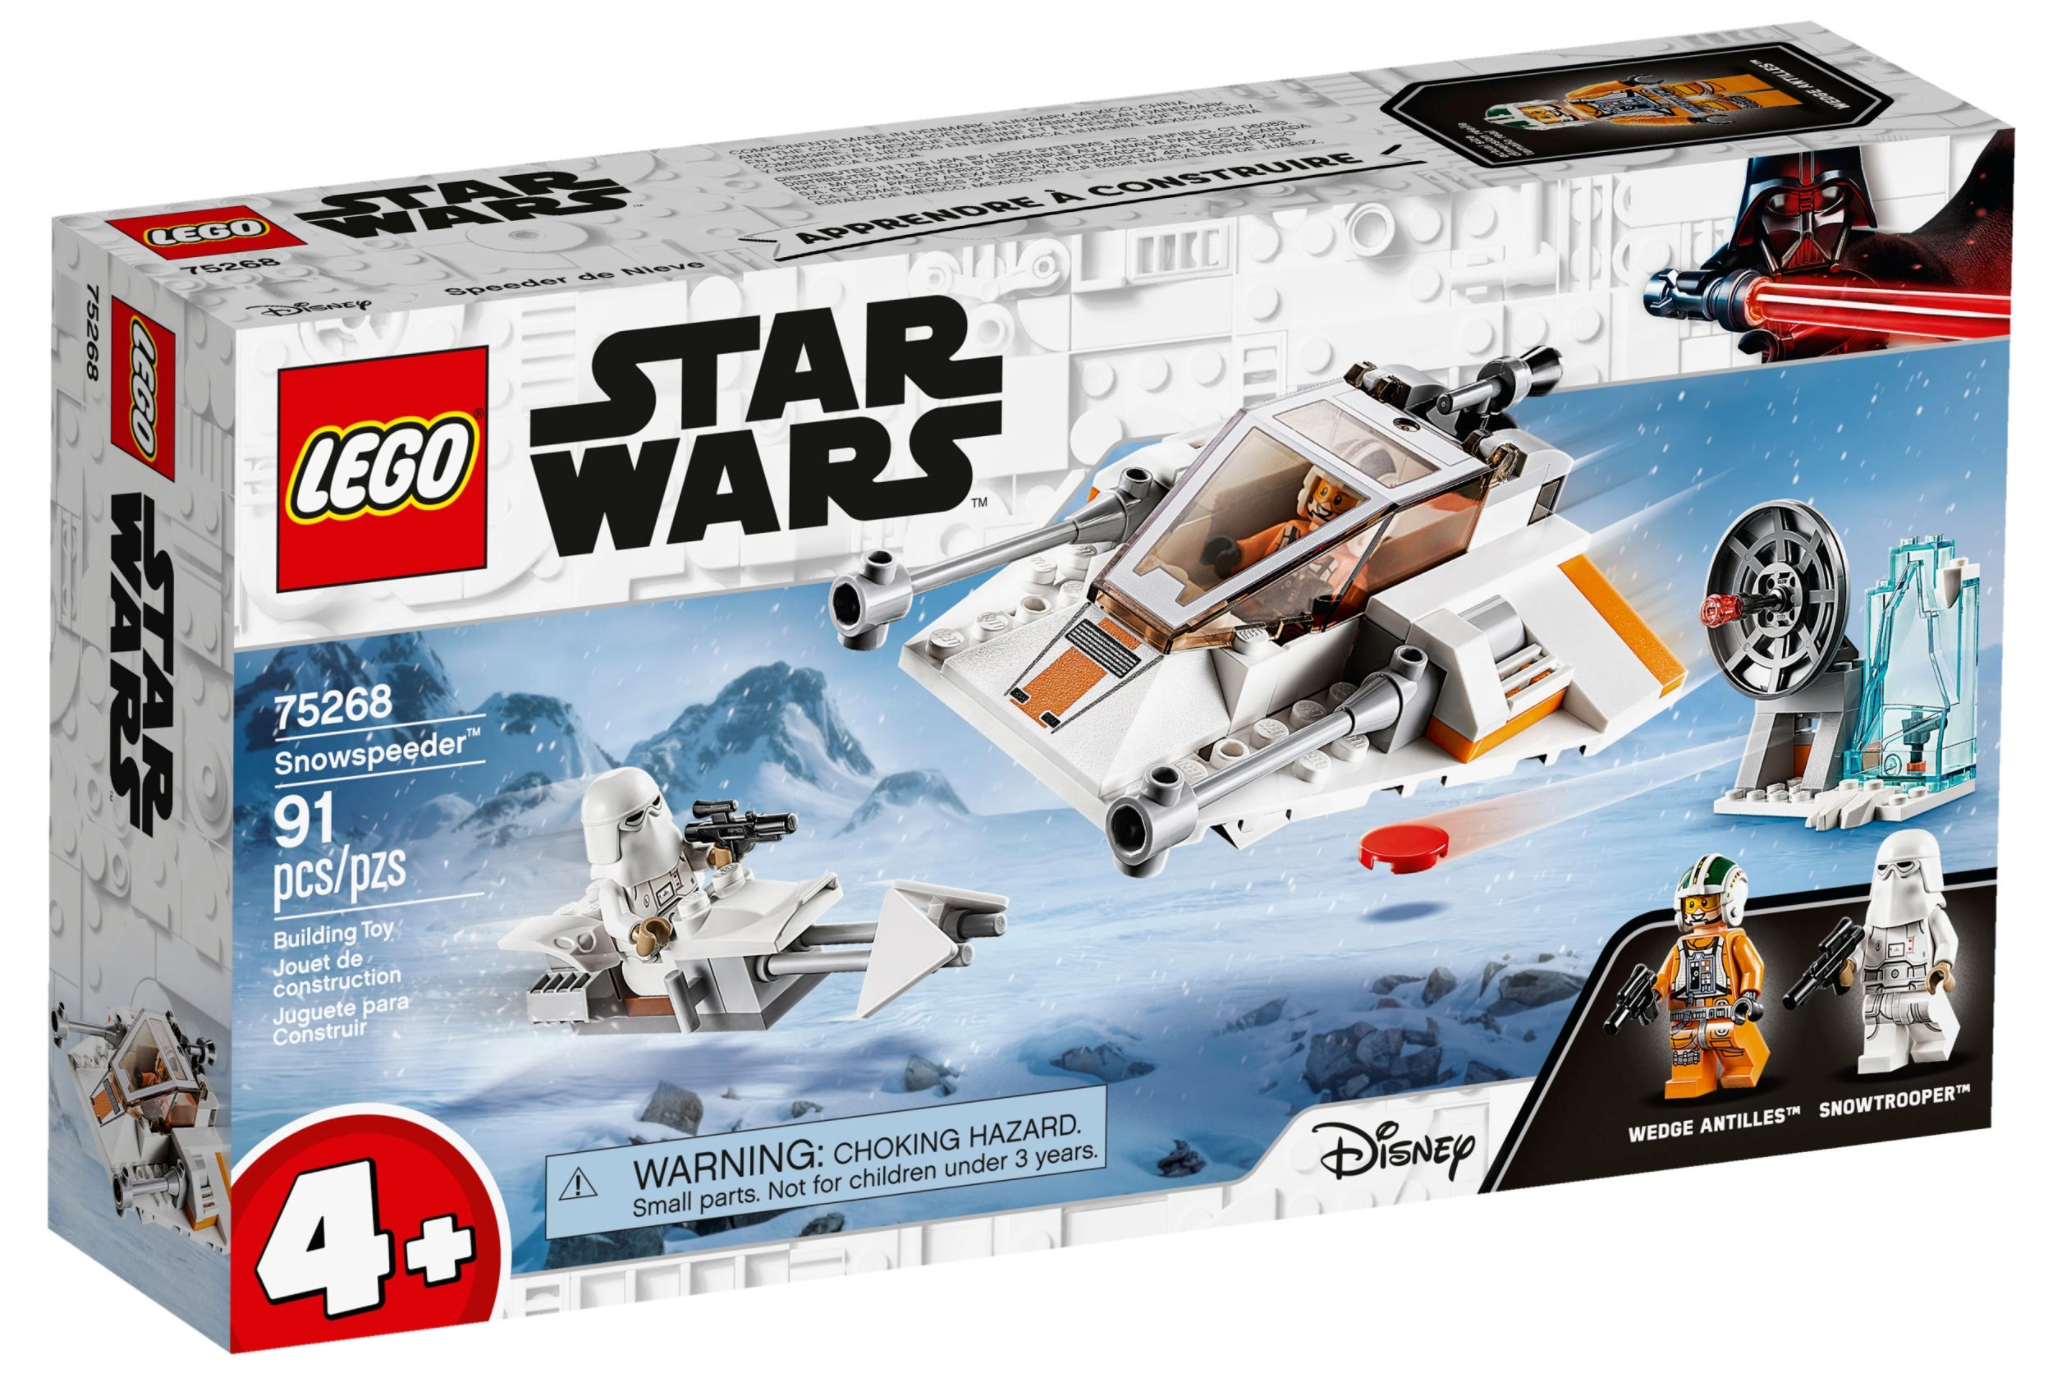 LEGO: Star Wars - Snowspeeder™